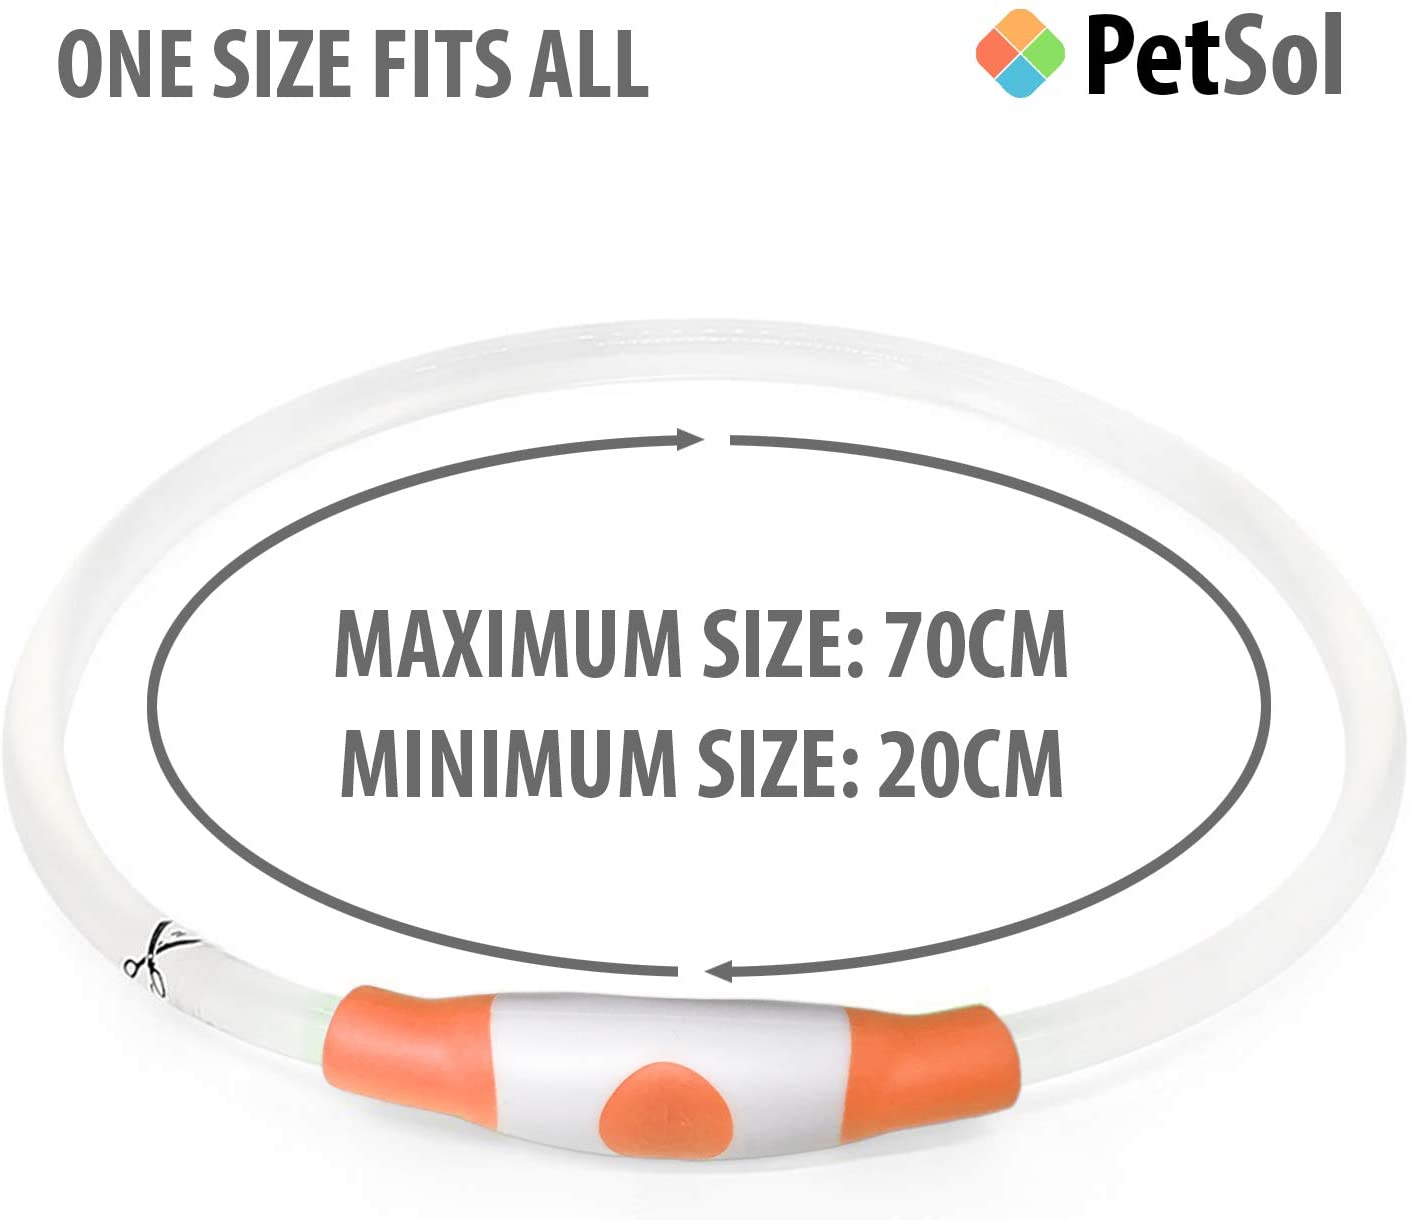  PetSol Collar de Seguridad LED Recargable Ultra Brillante para su Mascota (batería de Litio Recargable) Mayor Visibilidad y Seguridad Azul 